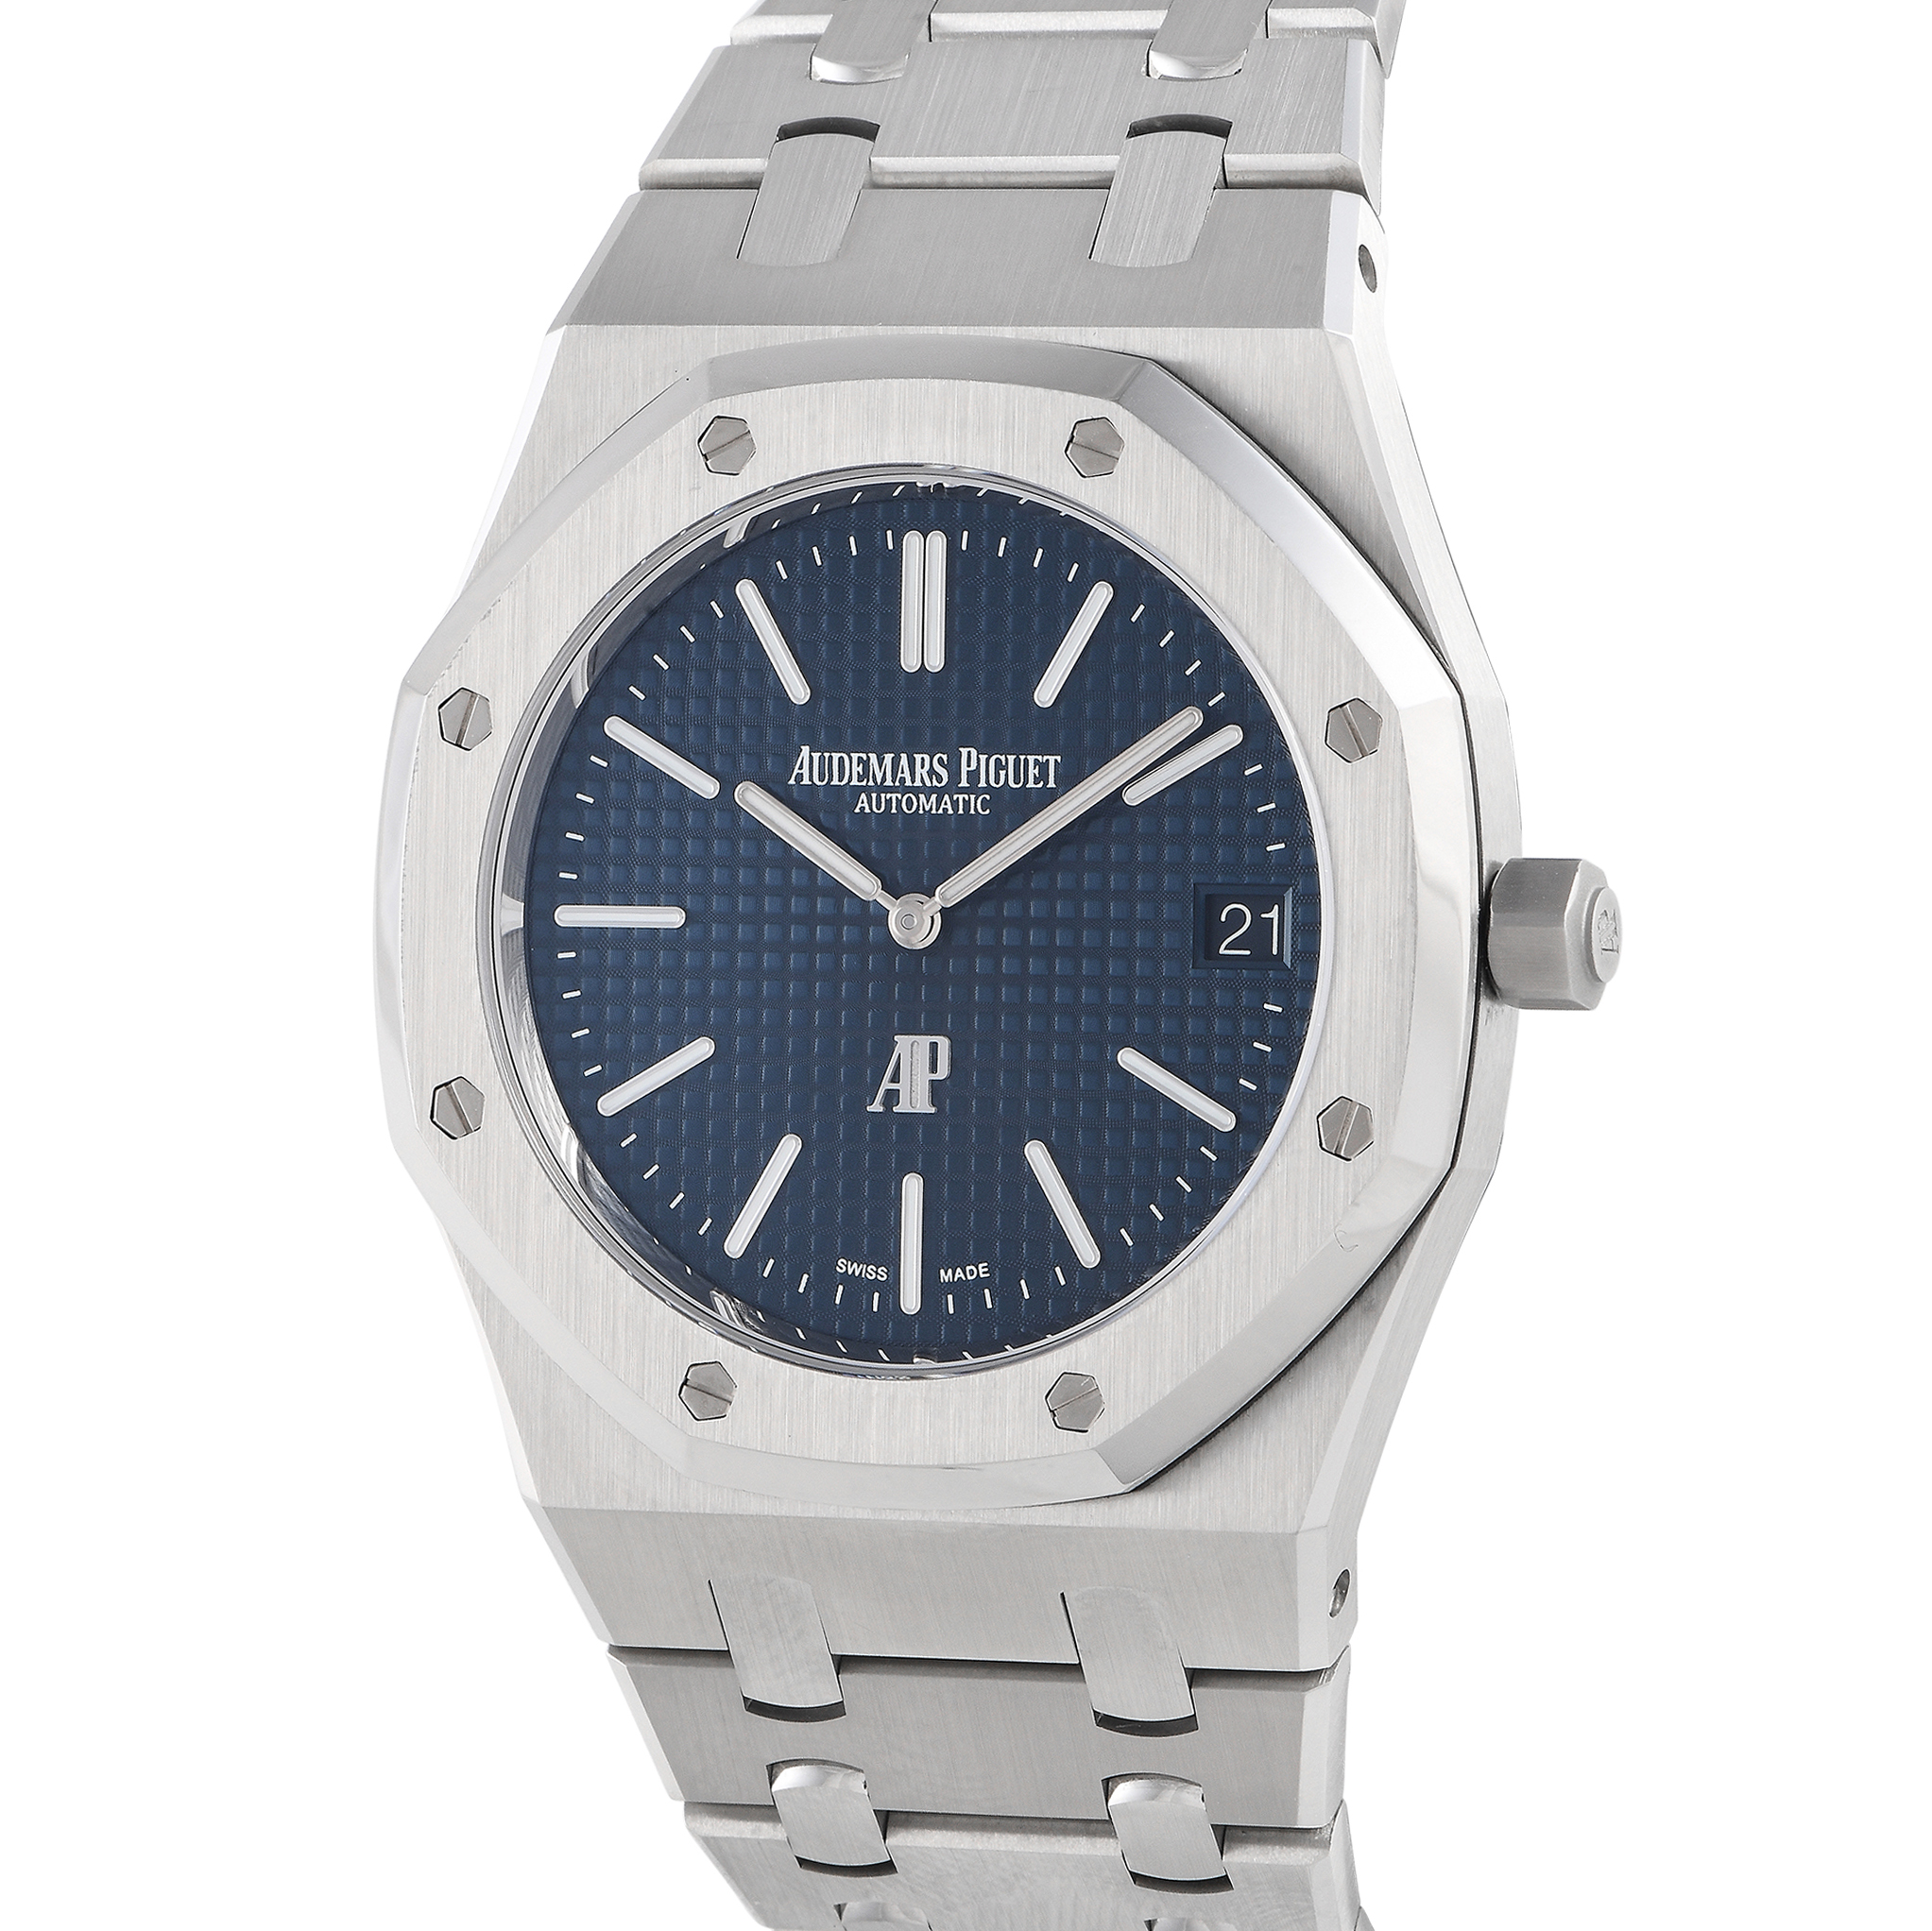 Audemars Piguet Royal Oak Jumbo Extra-Thin Watch 16202ST.OO.1240ST.01